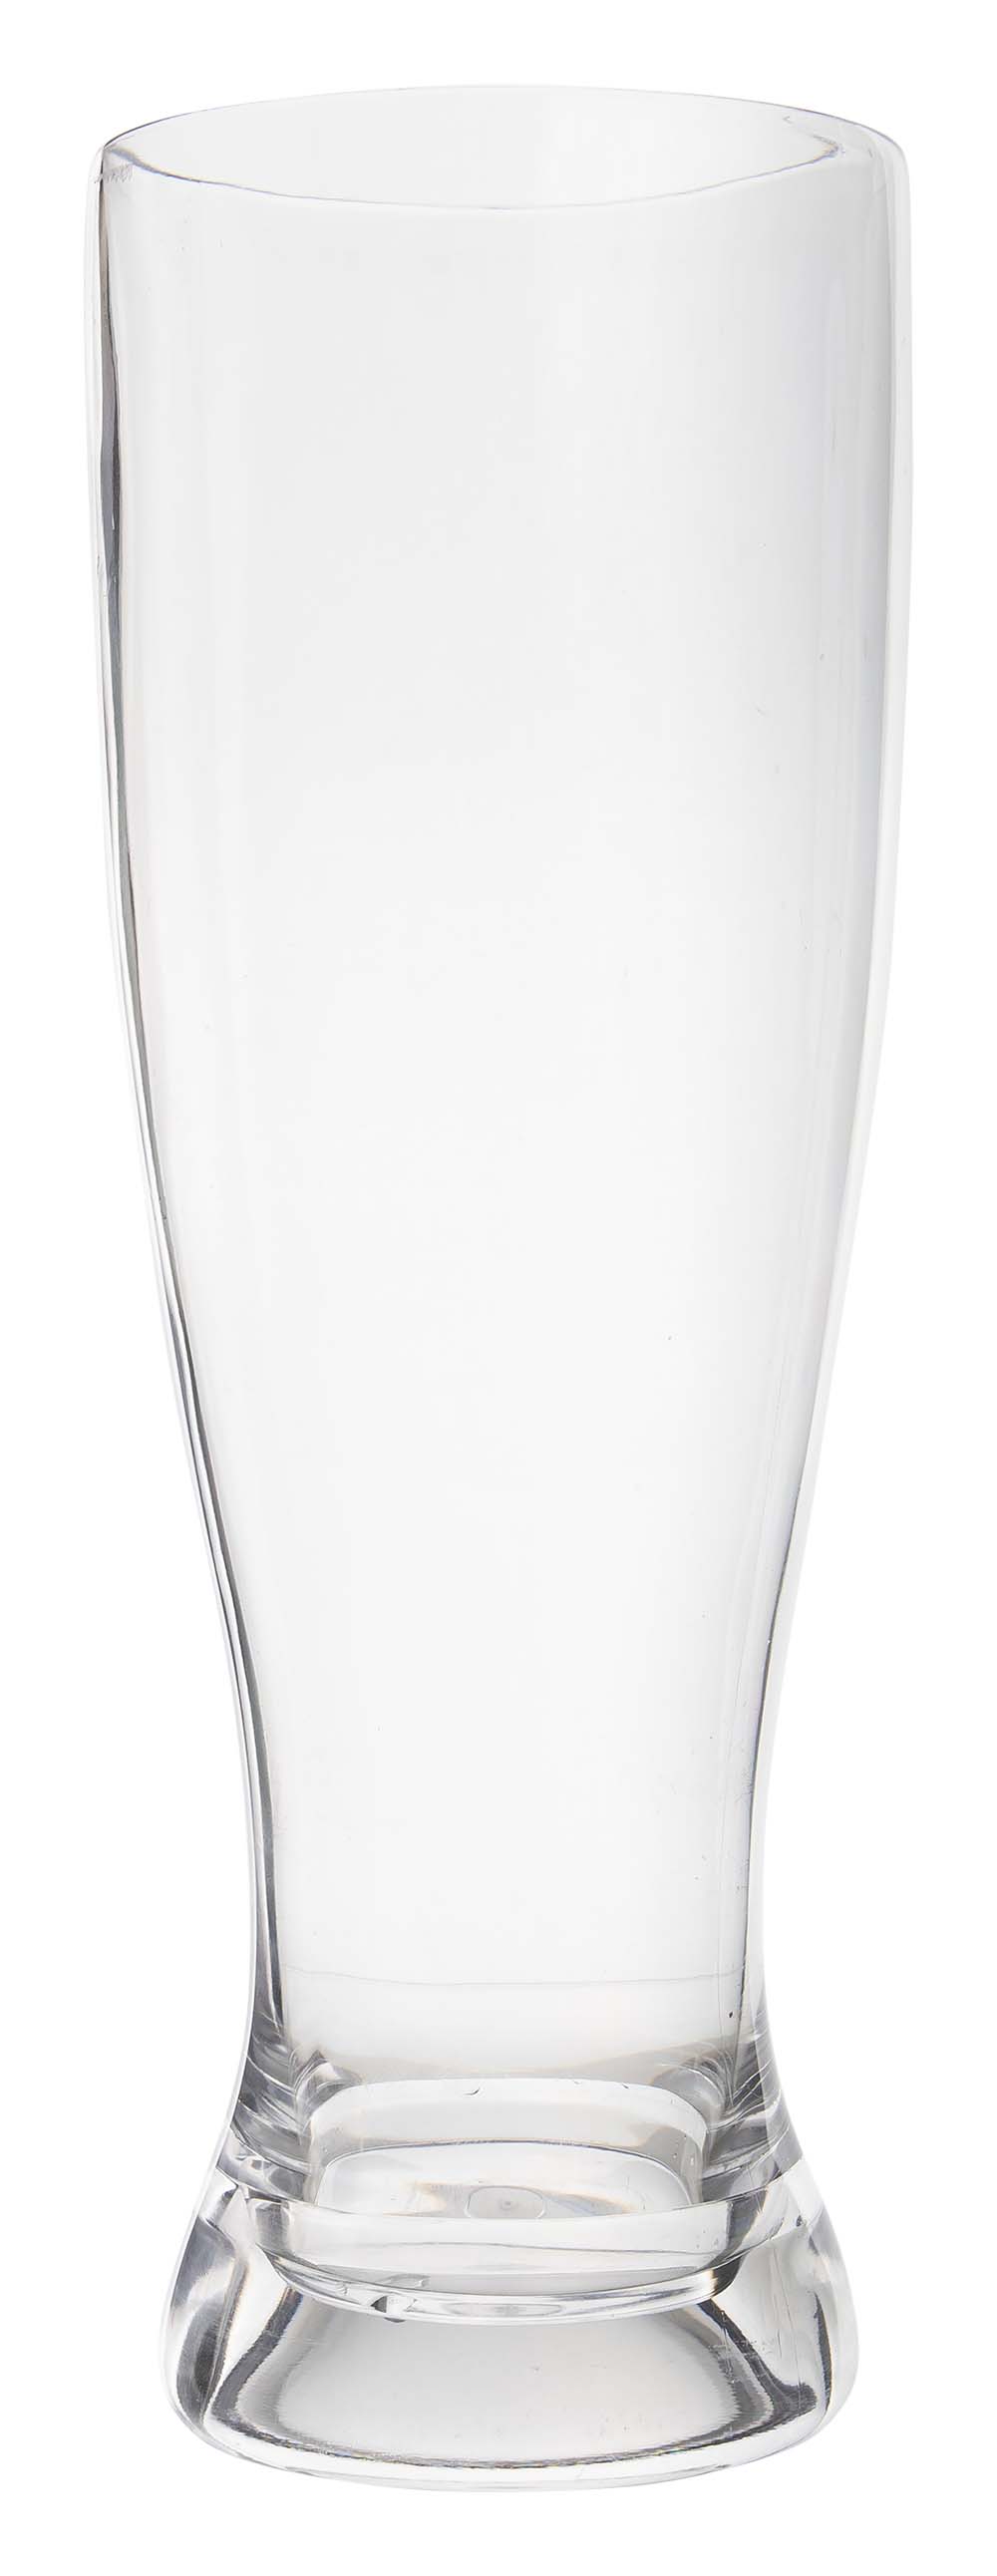 6969930 Een weizen bierglas uit de Solid line collectie. Vrijwel onbreekbaar door hoogwaardig SAN materiaal. Zeer gemakkelijk te reinigen en langdurig te gebruiken, wat het glas erg duurzaam maakt. Daarnaast is het weizen glas erg lichtgewicht en krasbestendig. Inhoud: 700 ml.